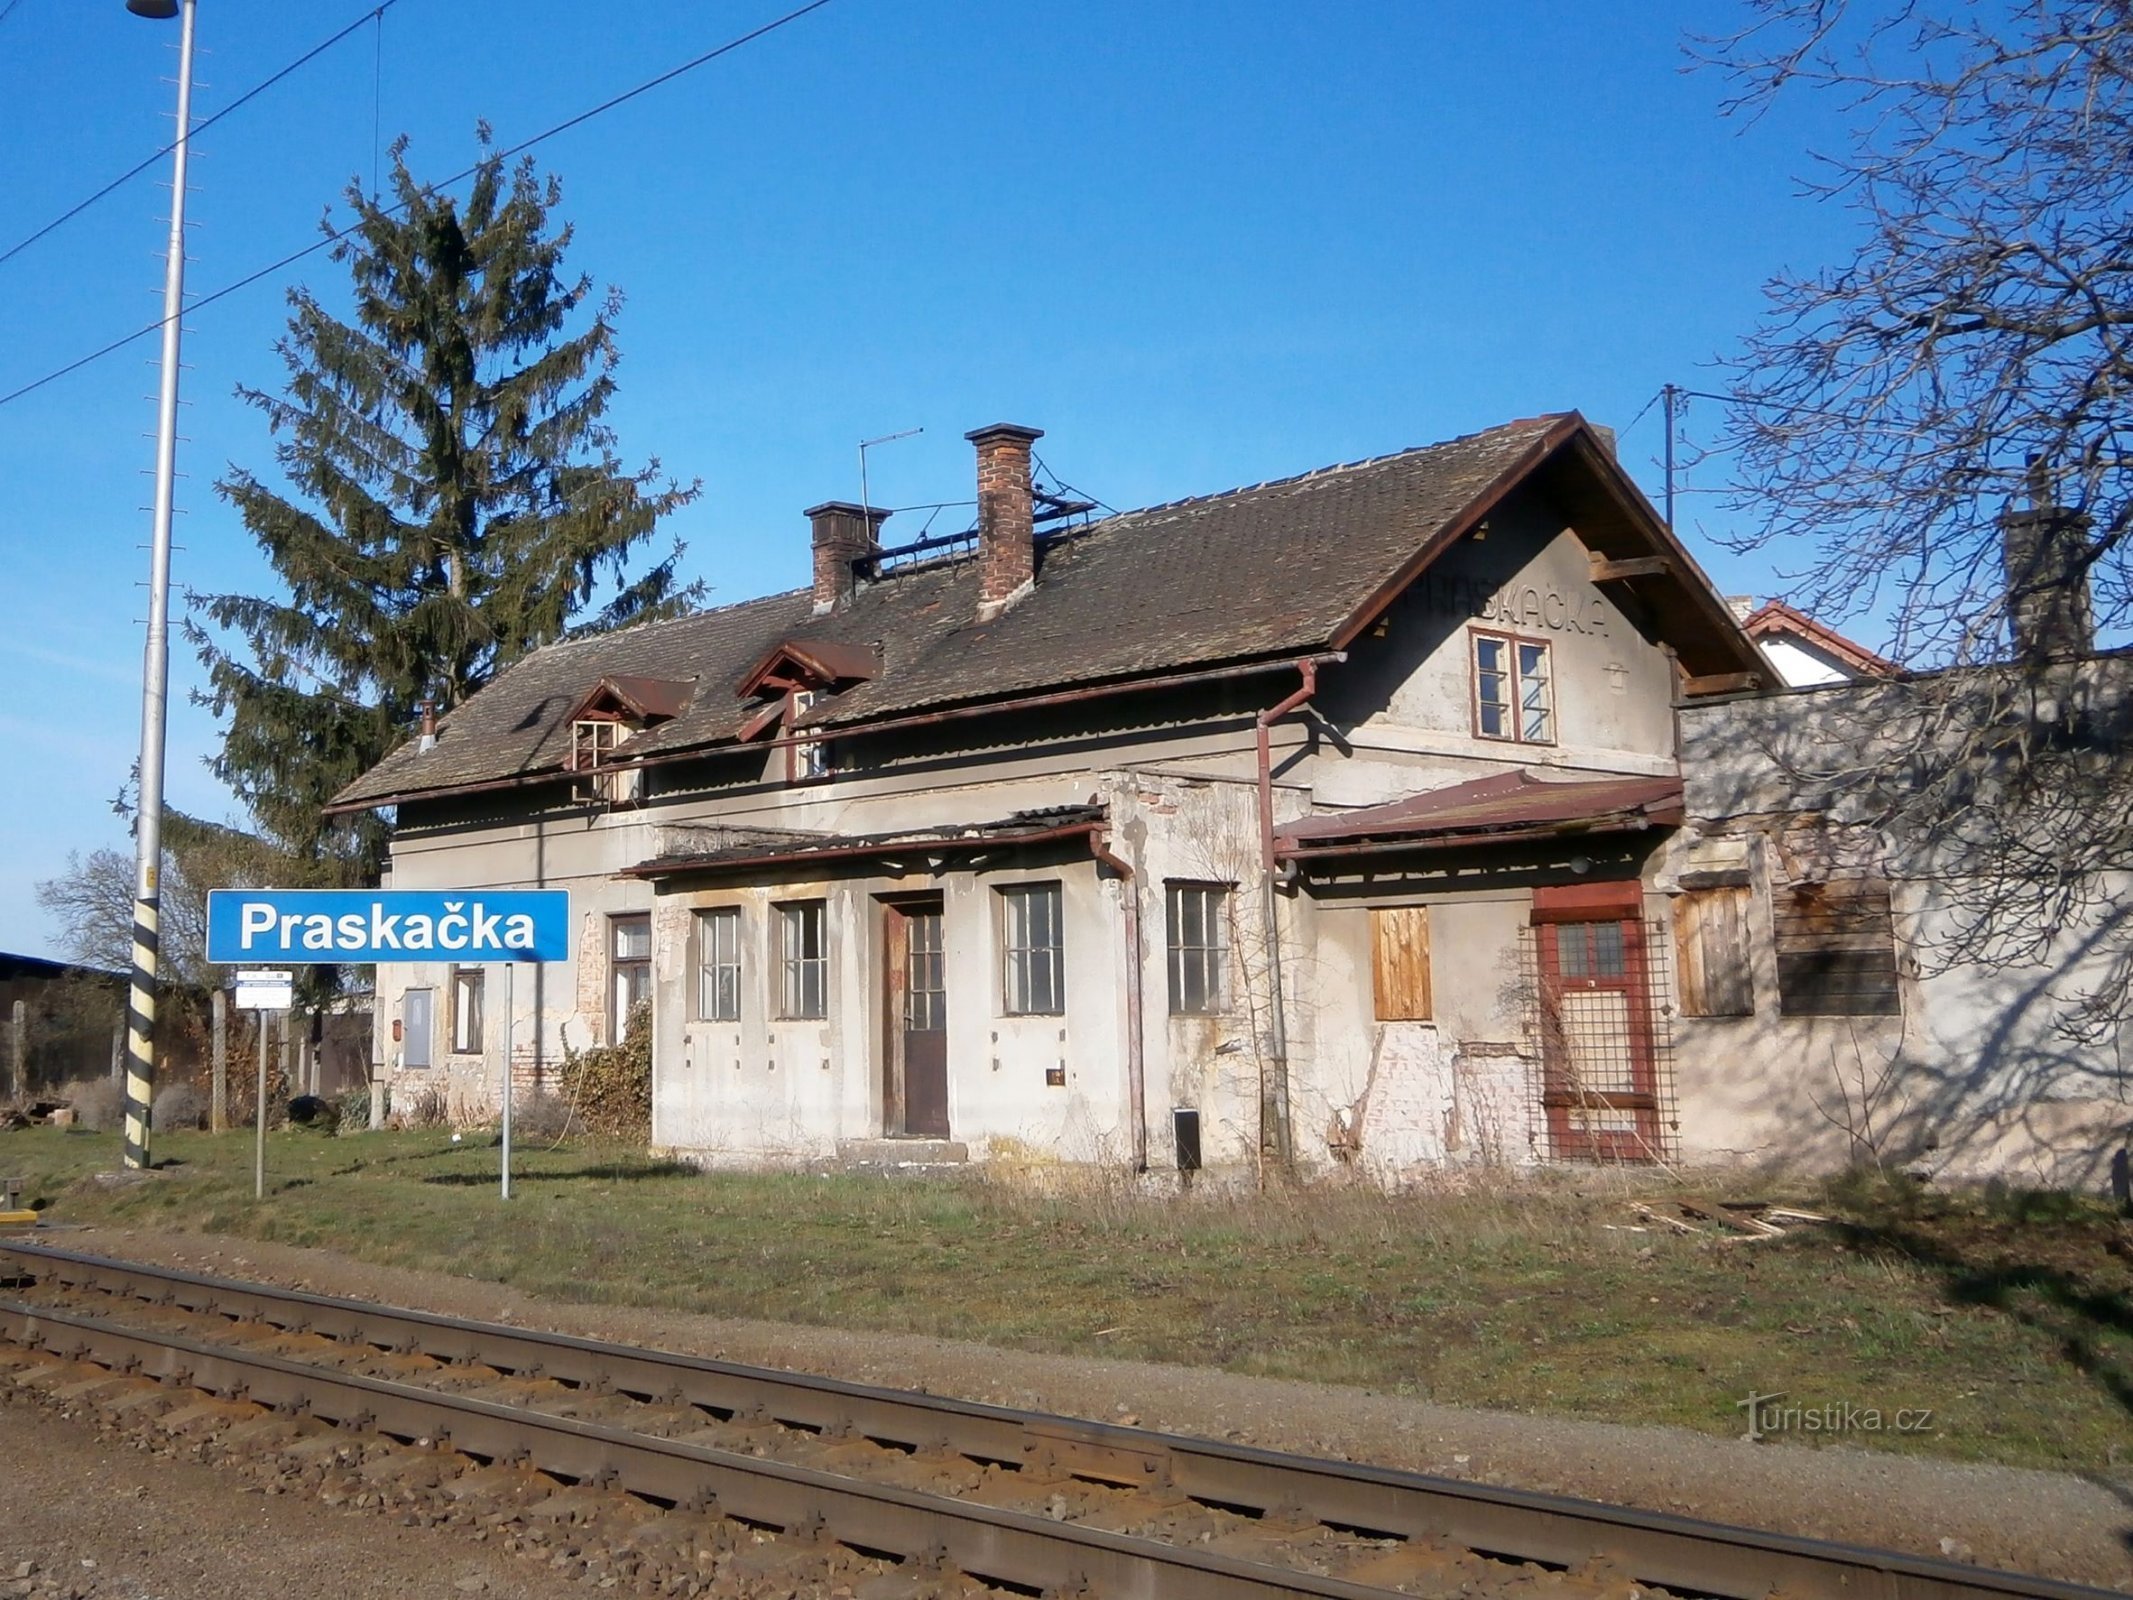 Vechea gară deja demolată (Praskačka, 26.3.2017)